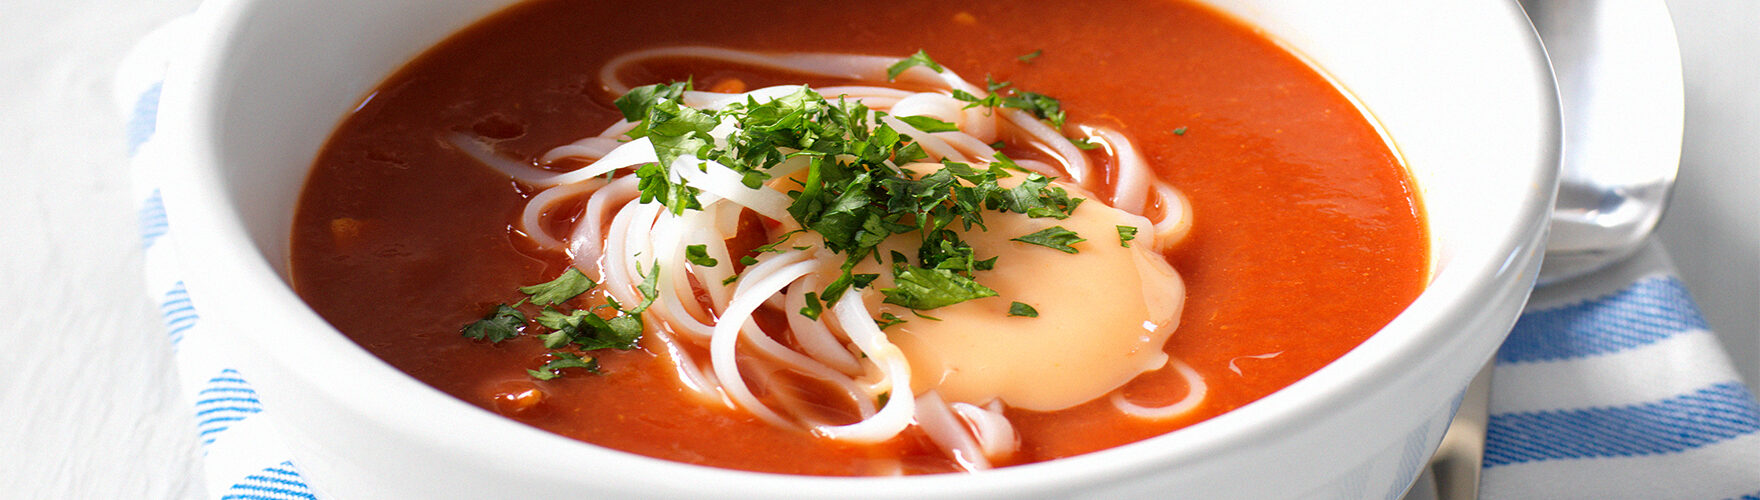 Soupe aux tomates à l’asiatique accompagnée d’une tendre cuisse de poulet